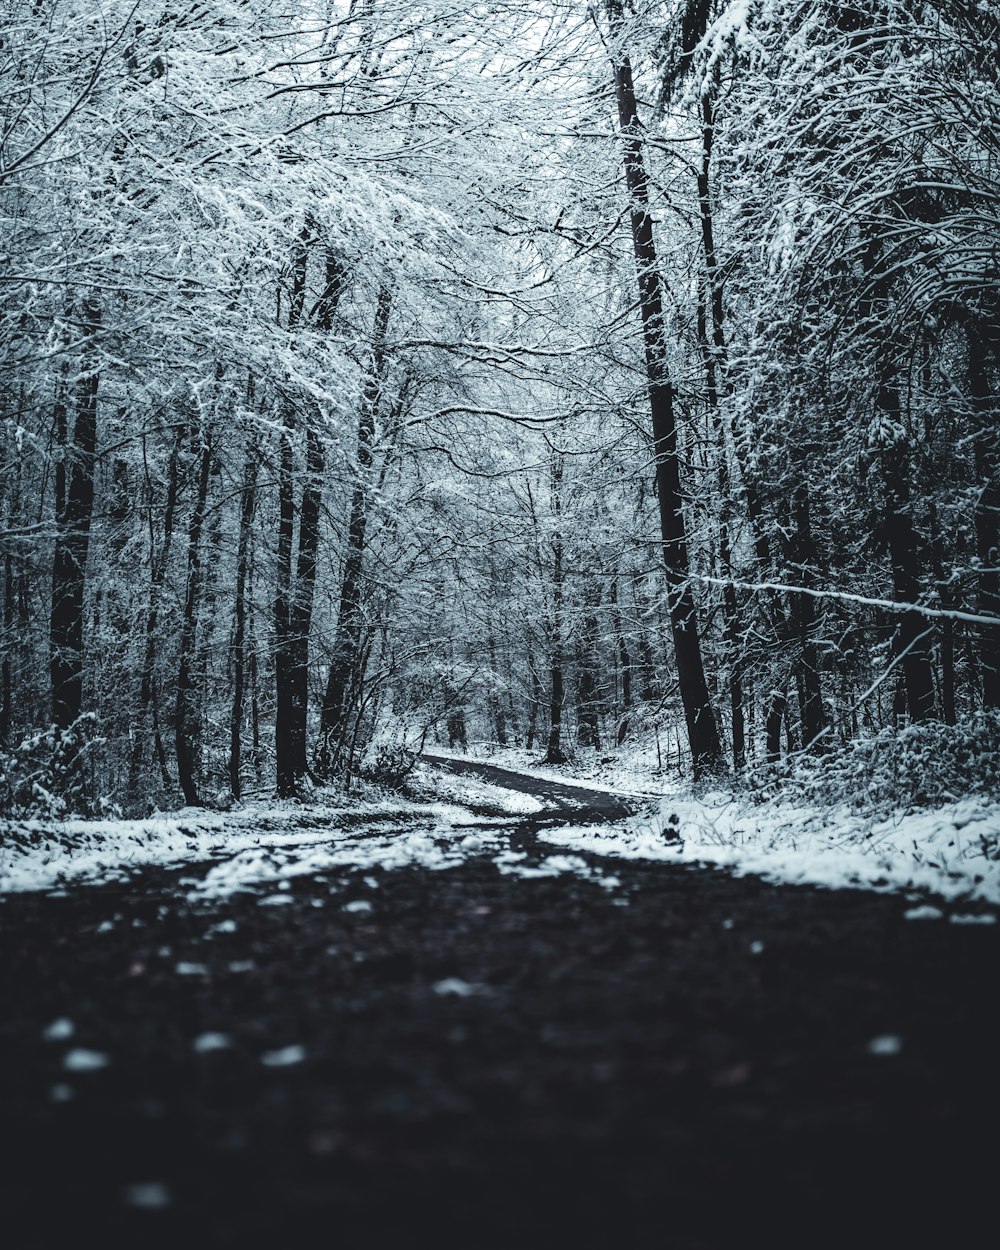 schwarzer Weg zwischen kahlen Bäumen, die tagsüber mit Schnee bedeckt sind